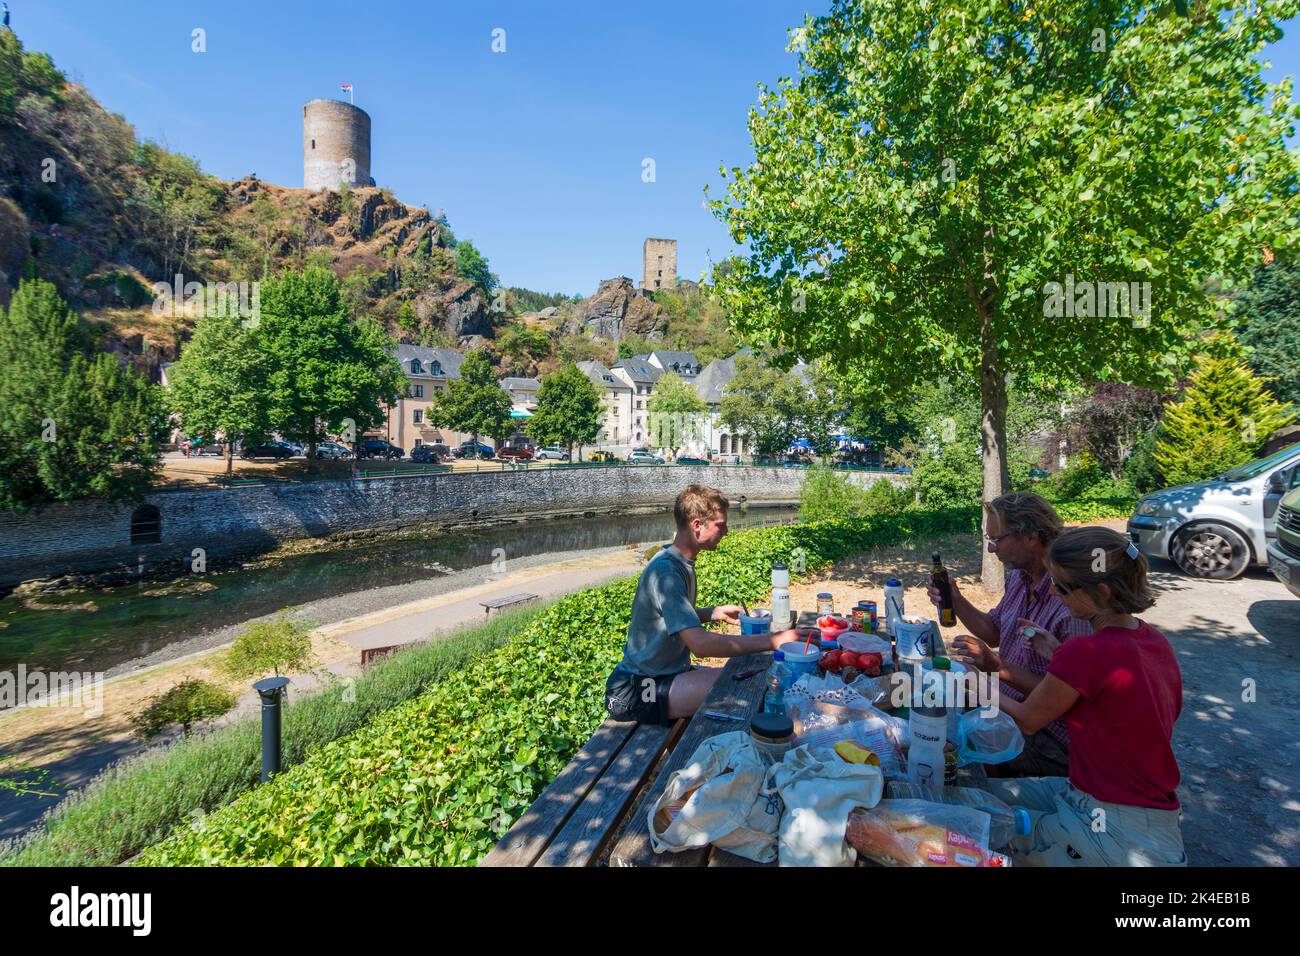 Esch-sur-Sûre (Esch-Sauer): Castello di Esch-sur-Sure, città vecchia, valle del fiume Sauer (Sure), turisti al tavolo da picnic, pranzo in , Lussemburgo Foto Stock